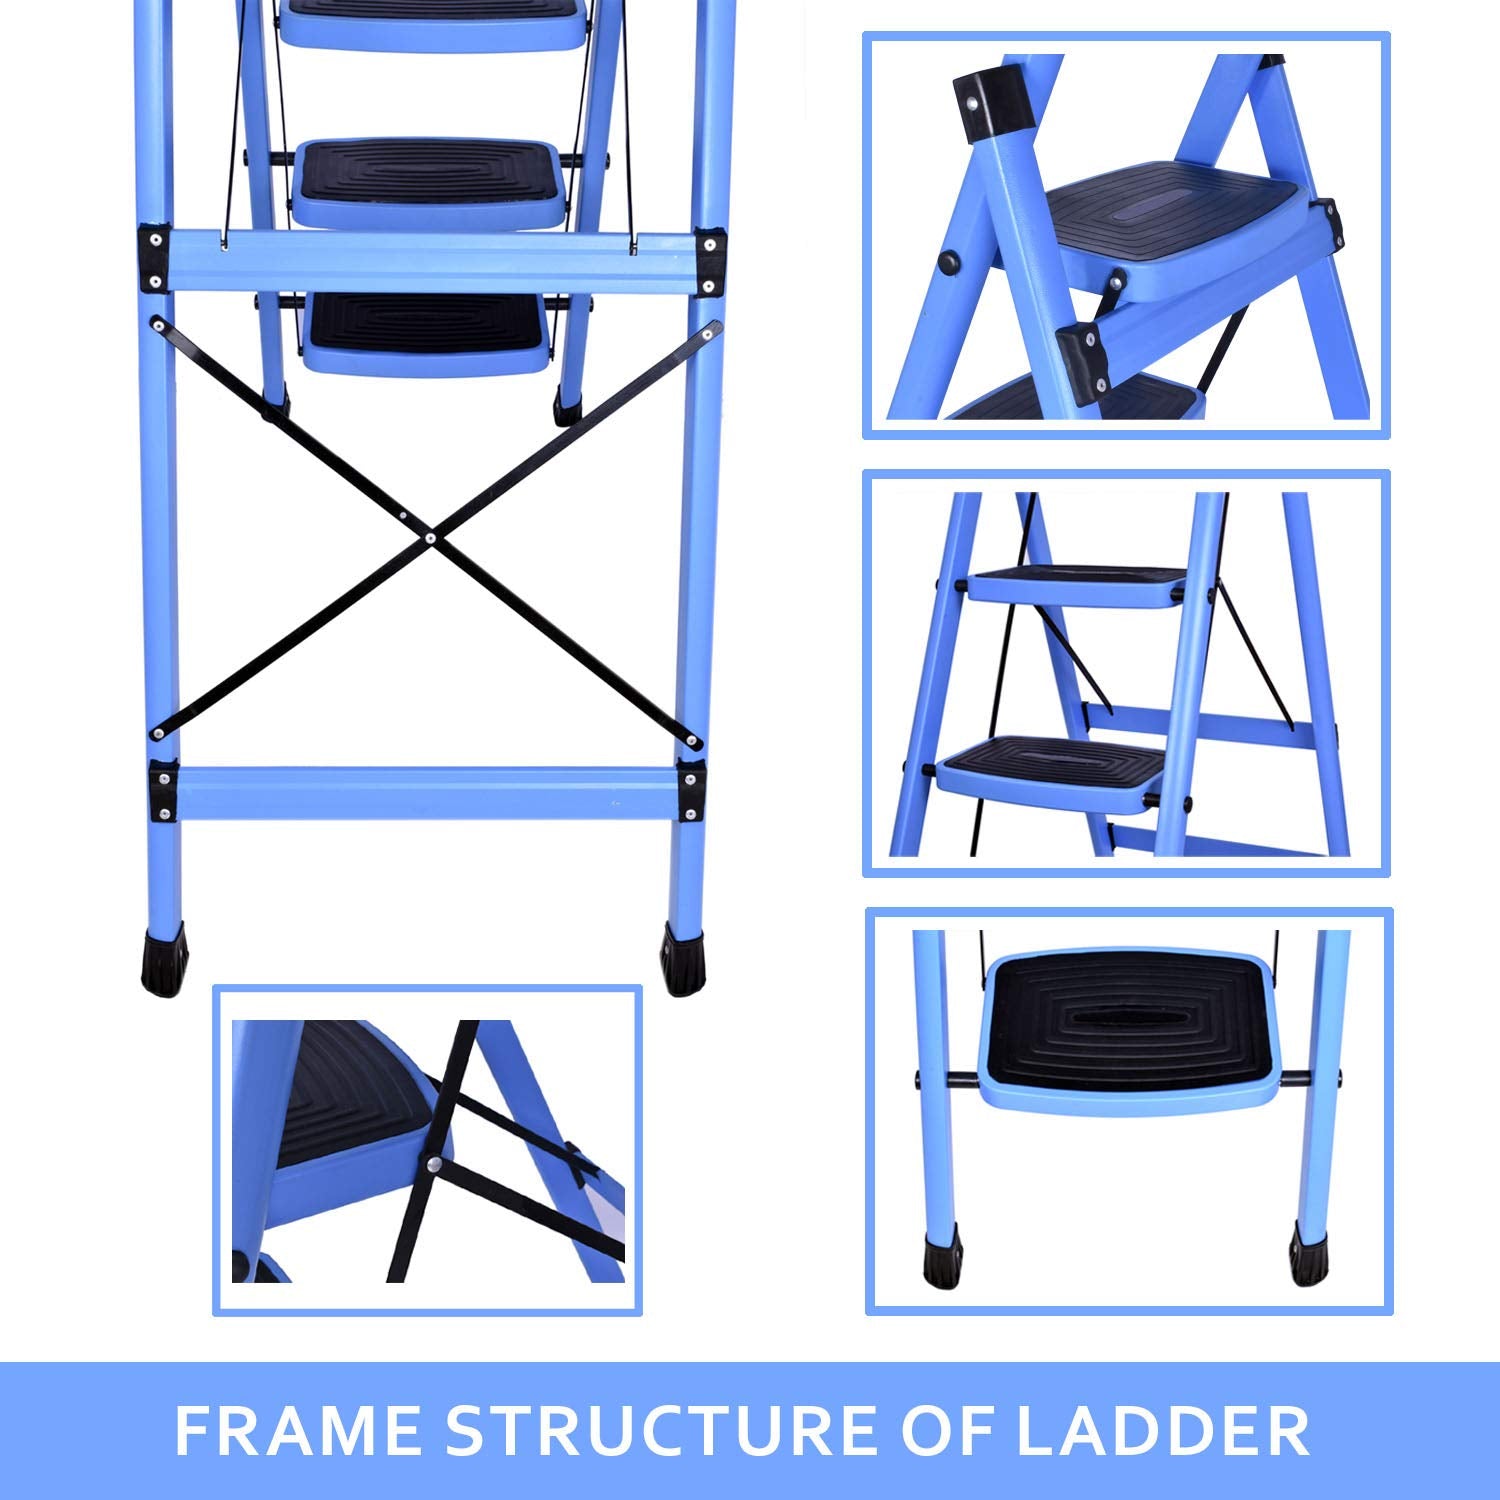 Plantex Ladder for Home-Foldable Steel 4 Step Ladder-Wide Anti Skid Steps (Blue & Black)